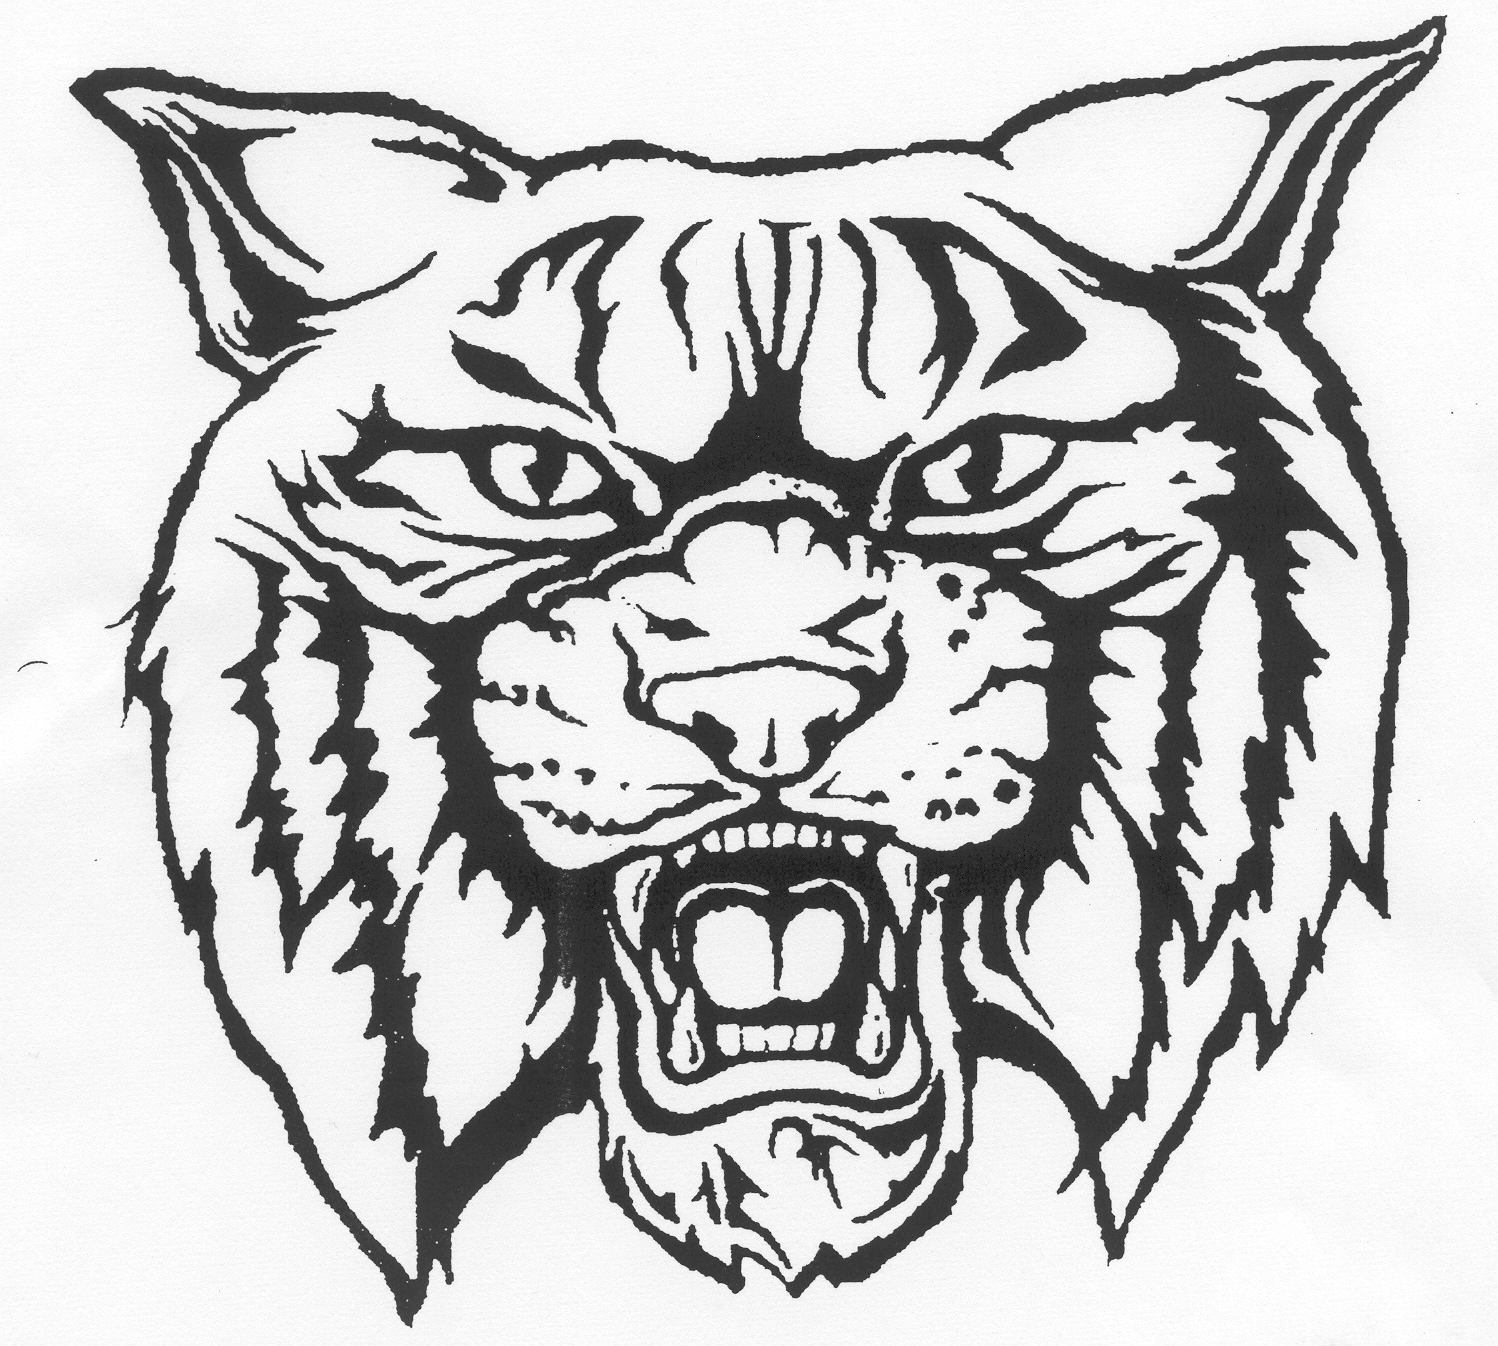 wildcat logo | Wildcat Mascot